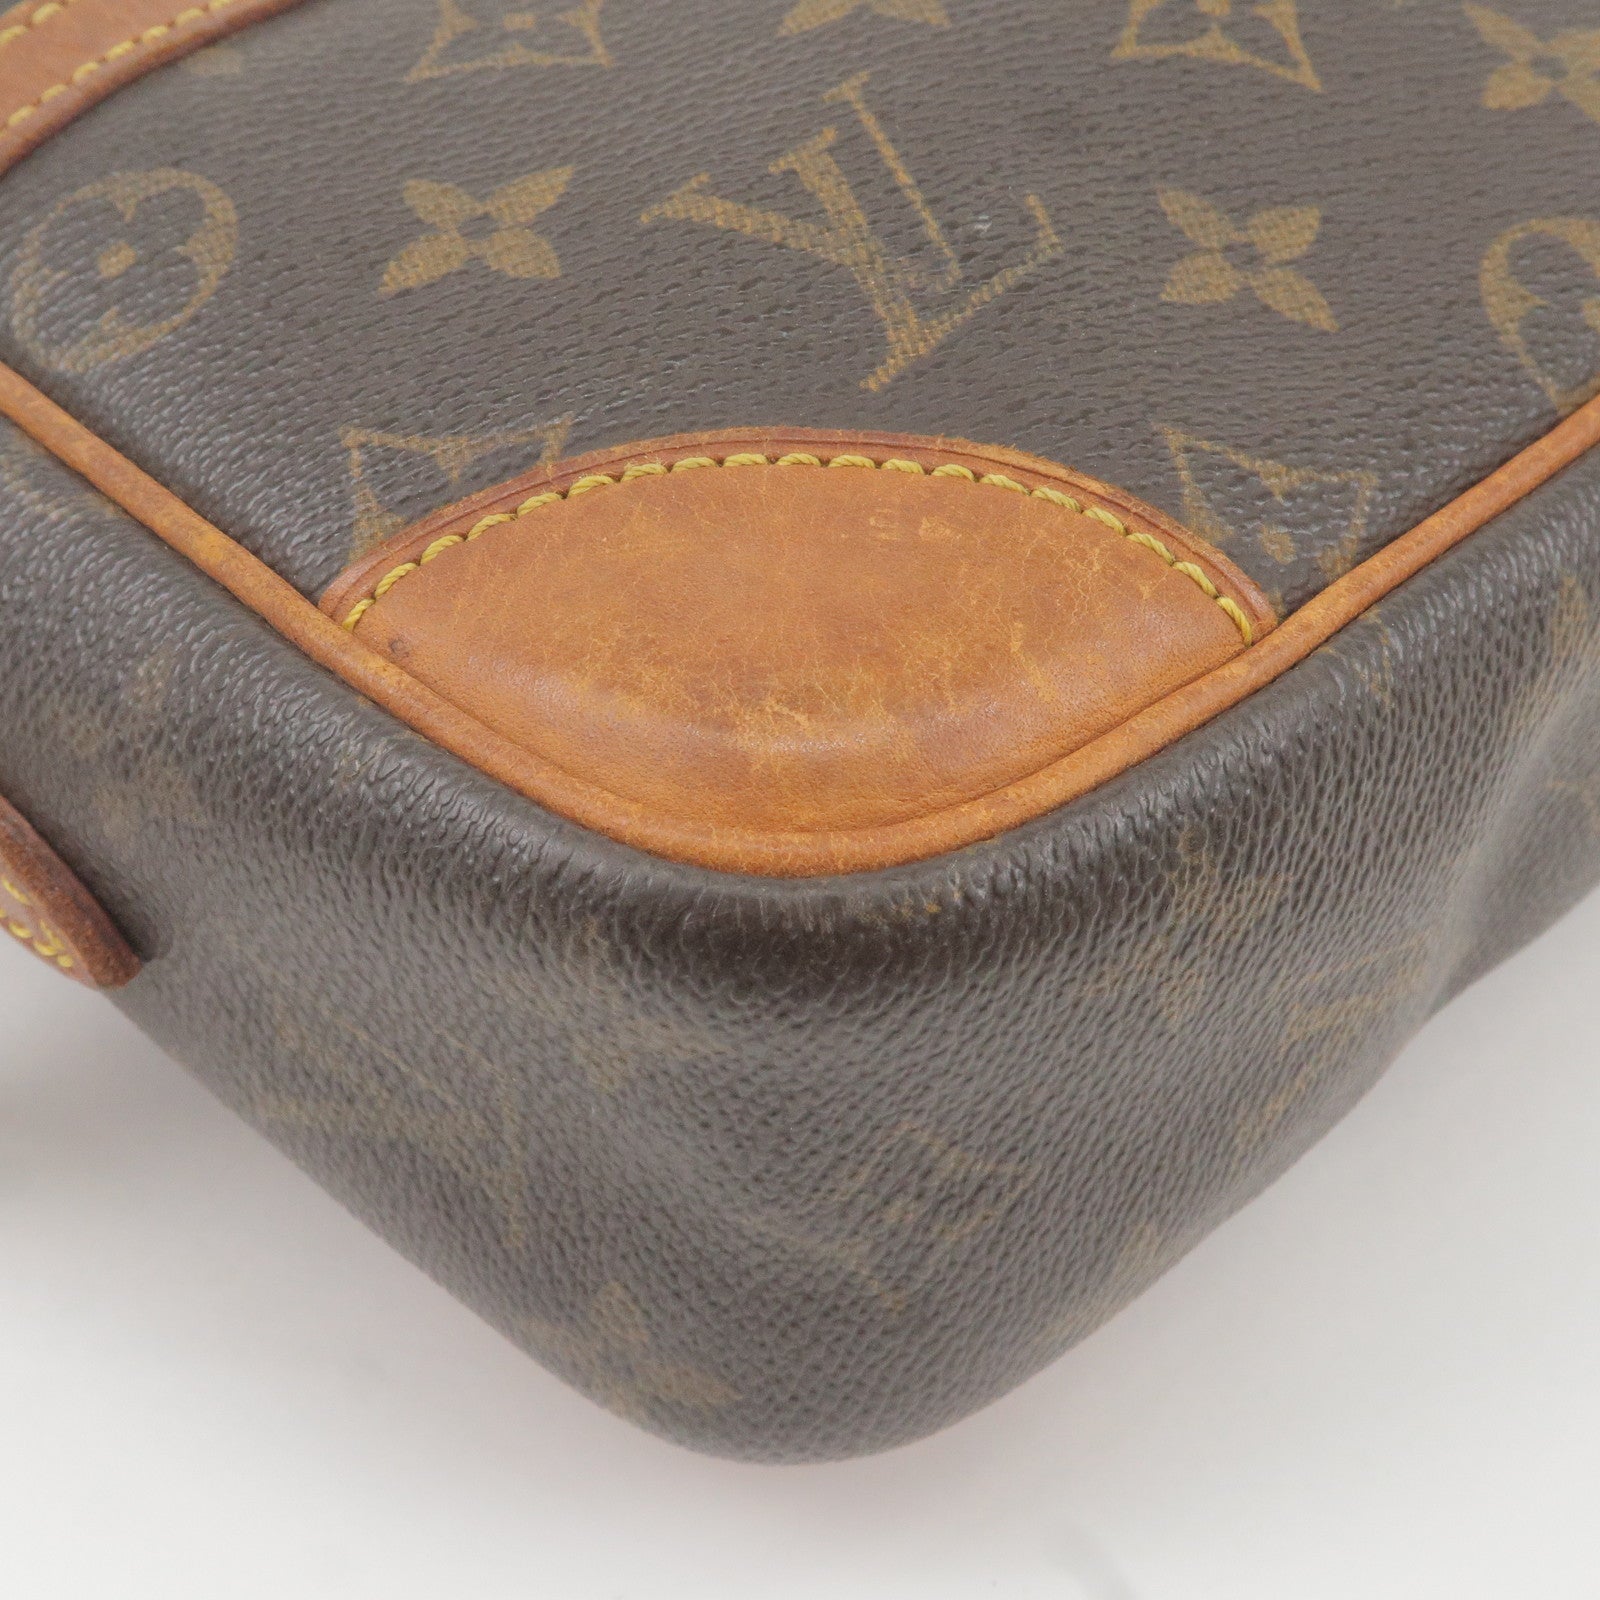 Louis Vuitton Twist Bag 20cm Epi Canvas Cruise Collection M68559